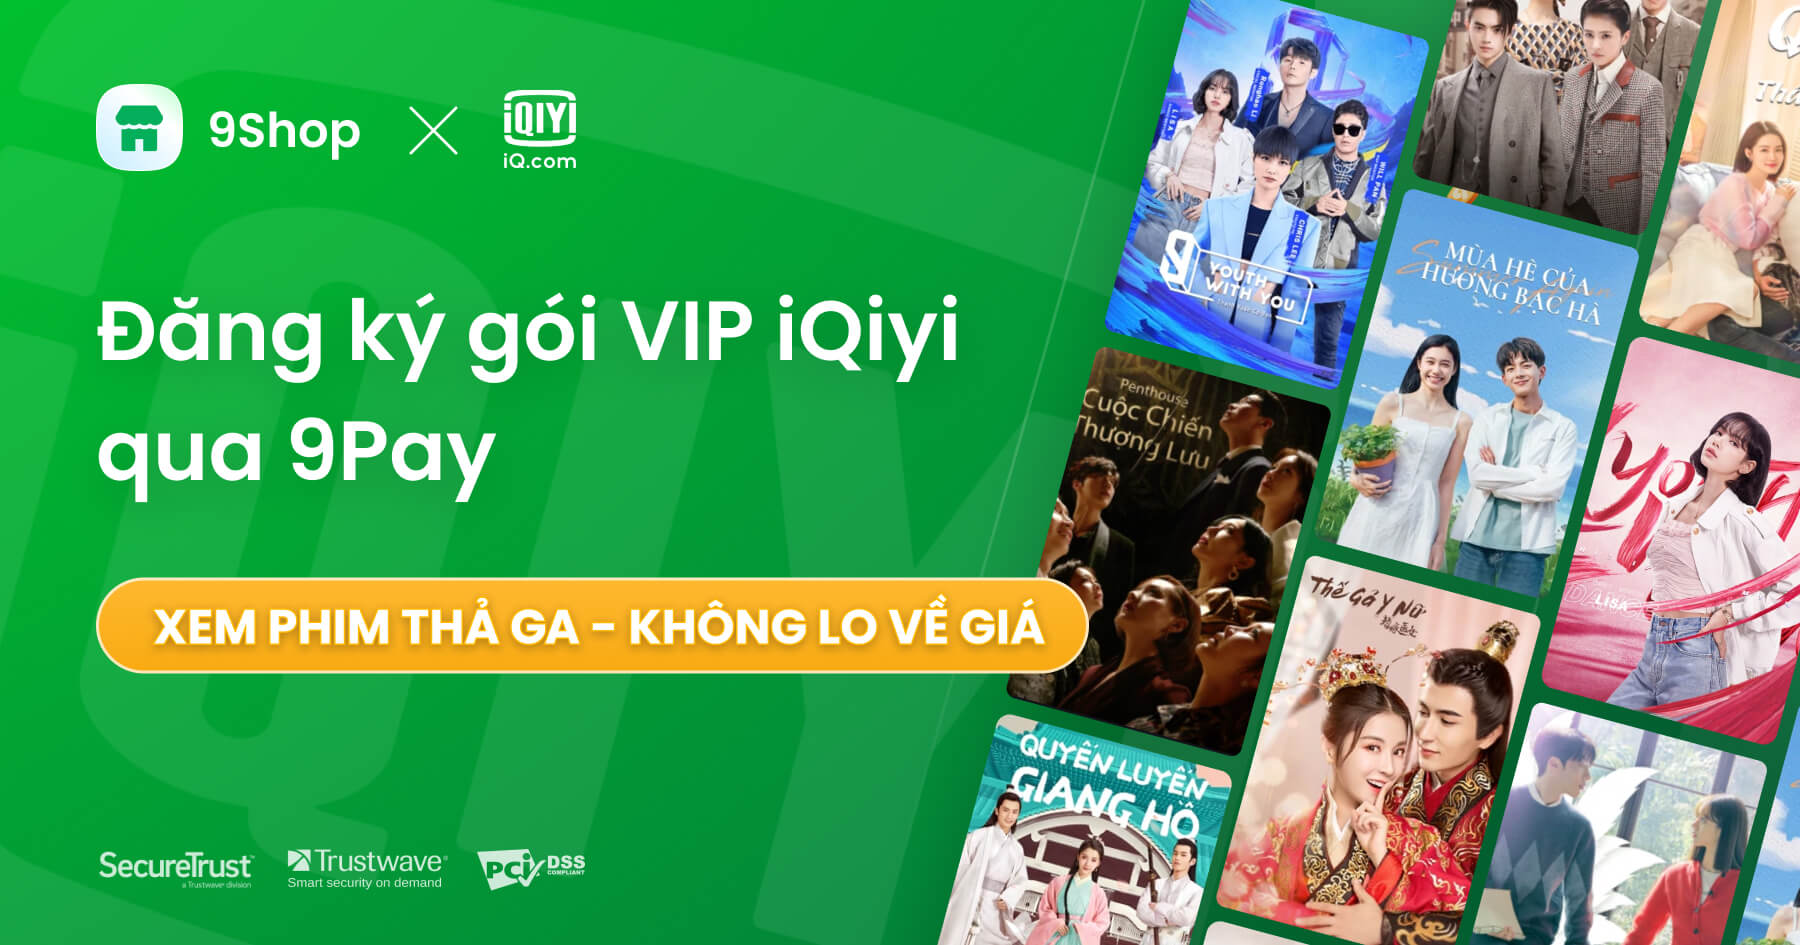 Mua voucher iQiyi, nâng cấp tài khoản Vip xem phim HD online